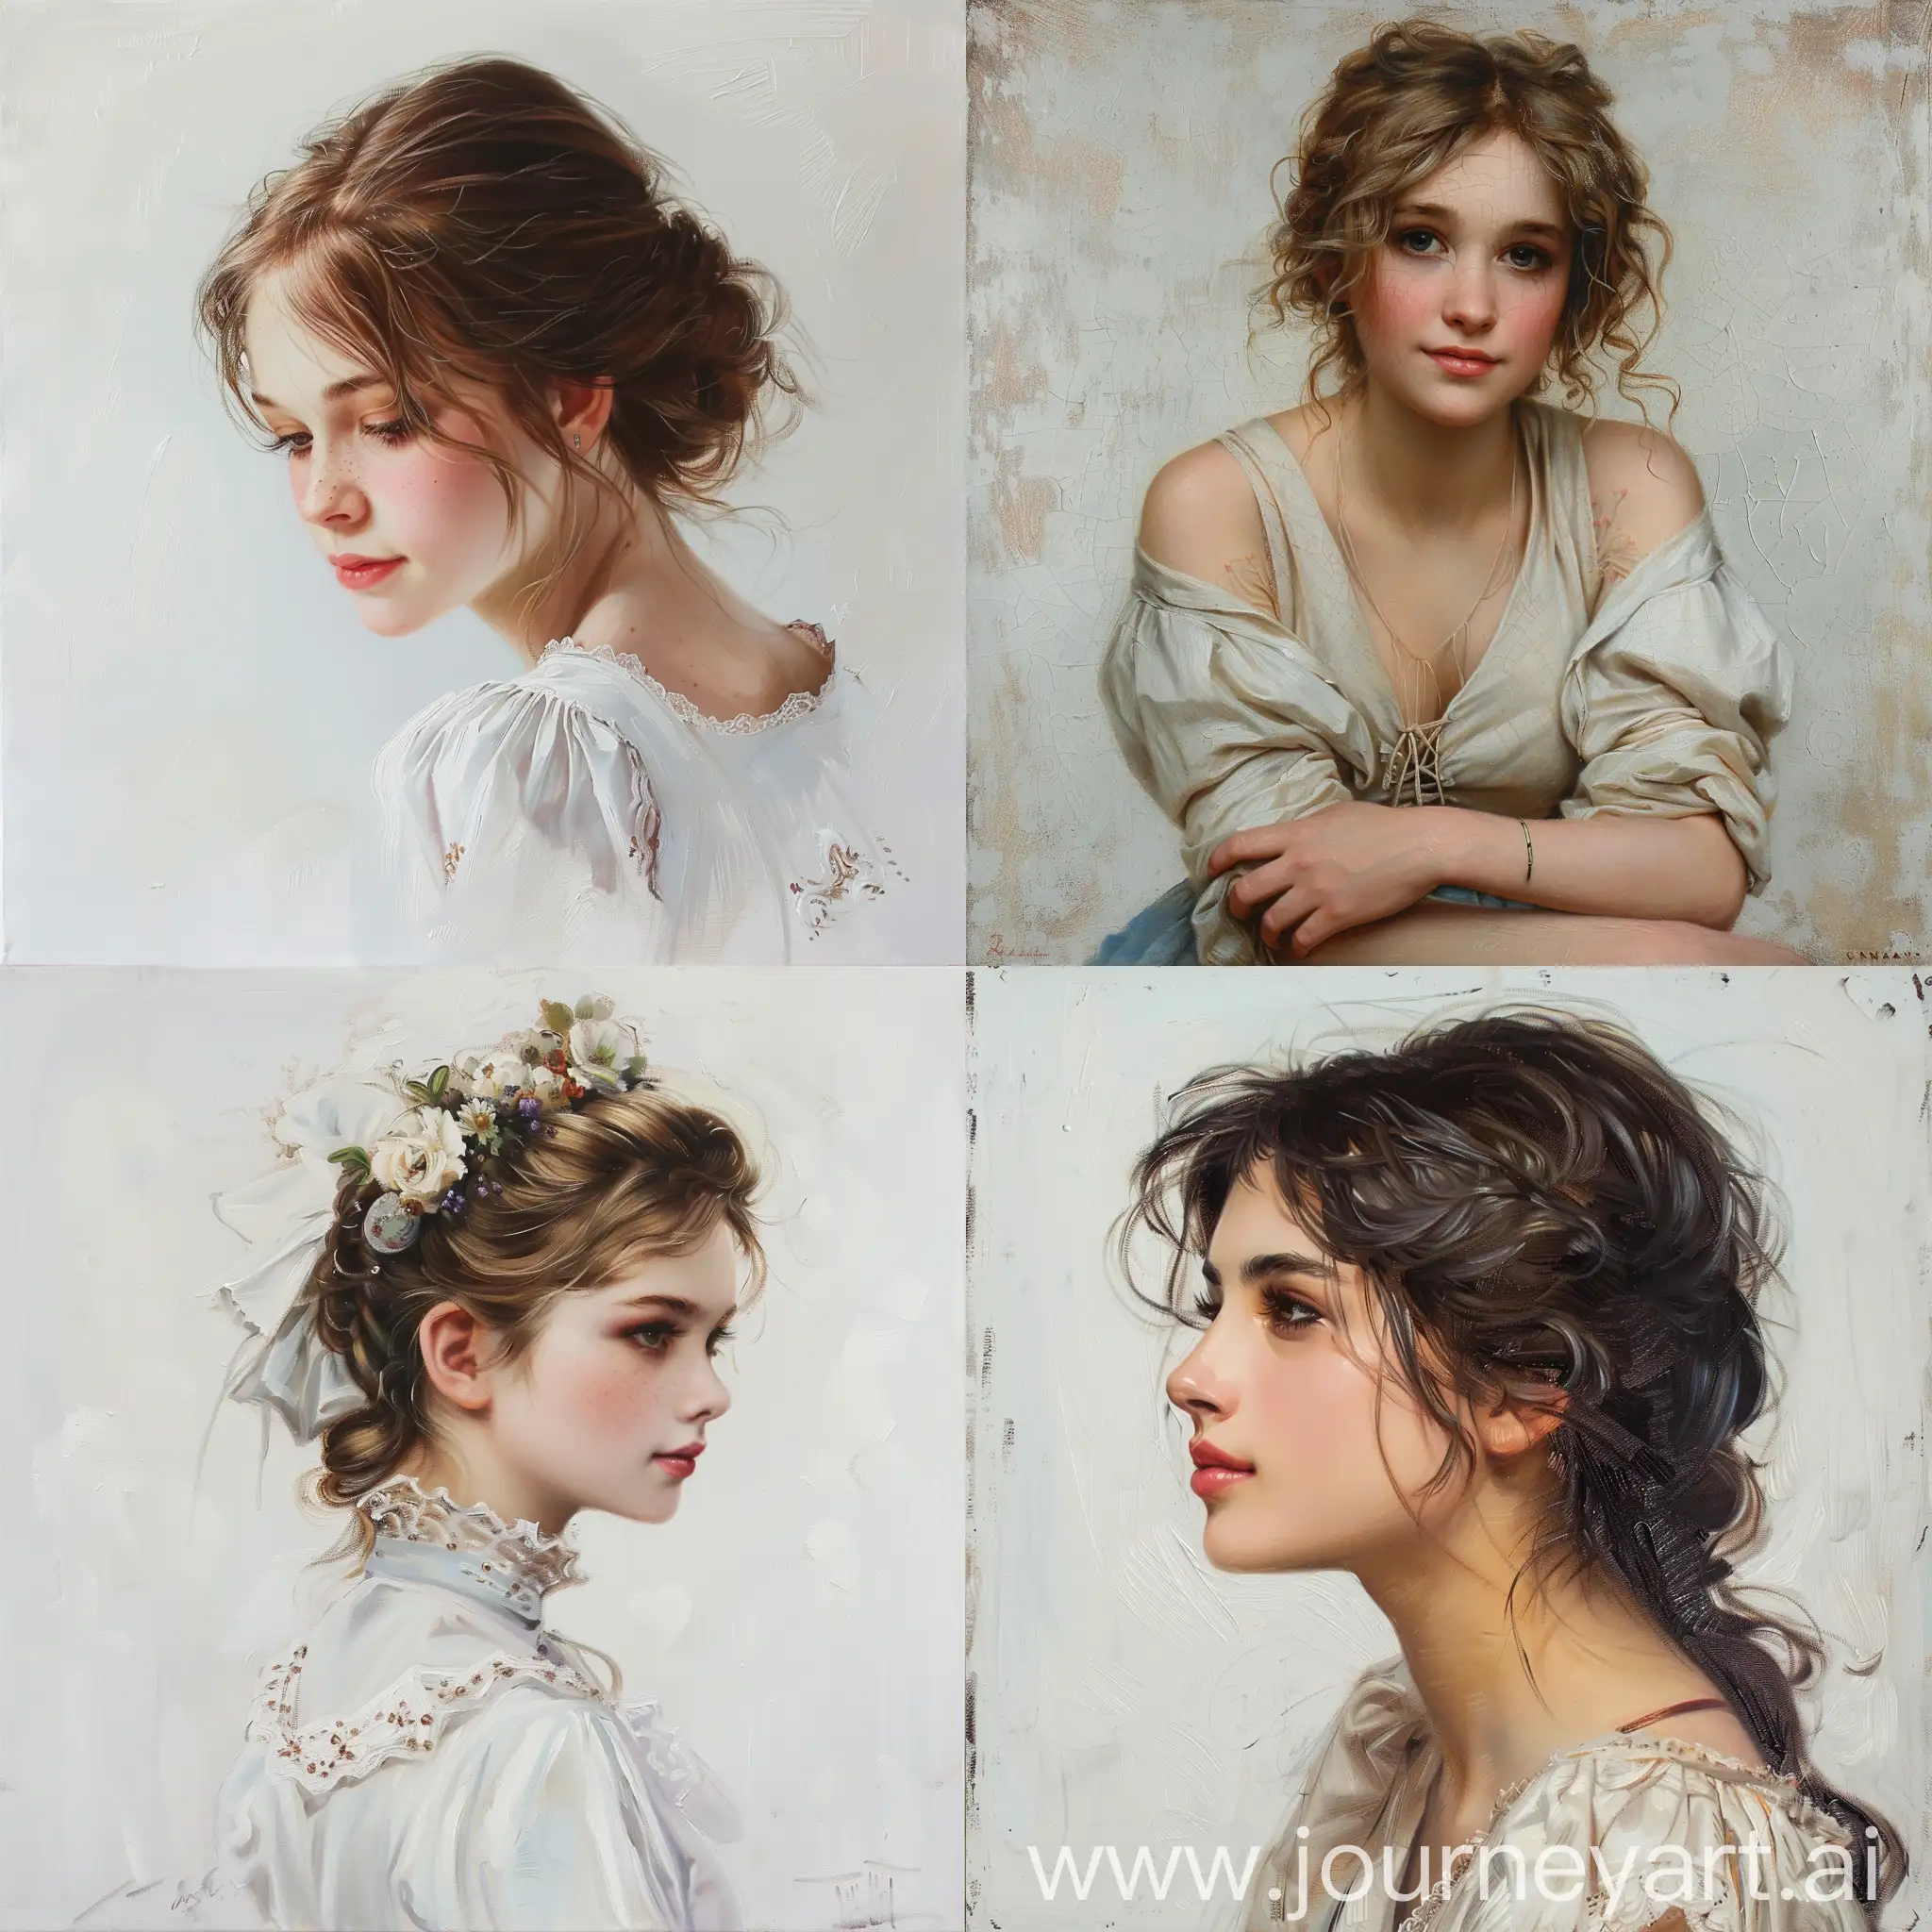 Enchanting-Romantic-Era-Girl-Painting-on-White-Background